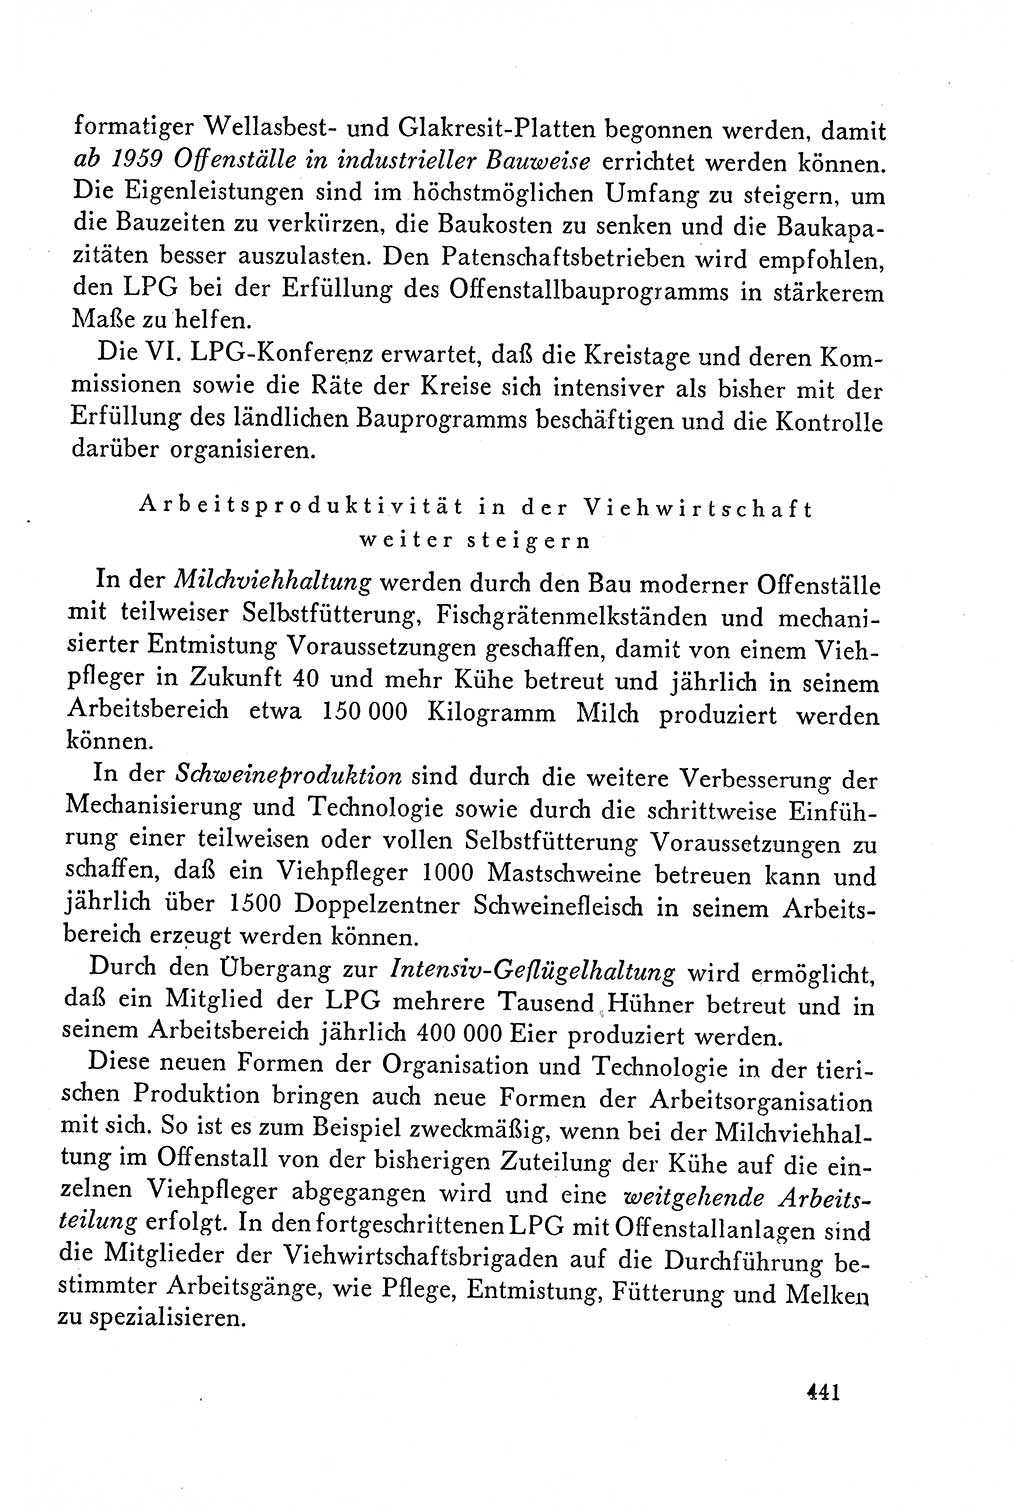 Dokumente der Sozialistischen Einheitspartei Deutschlands (SED) [Deutsche Demokratische Republik (DDR)] 1958-1959, Seite 441 (Dok. SED DDR 1958-1959, S. 441)